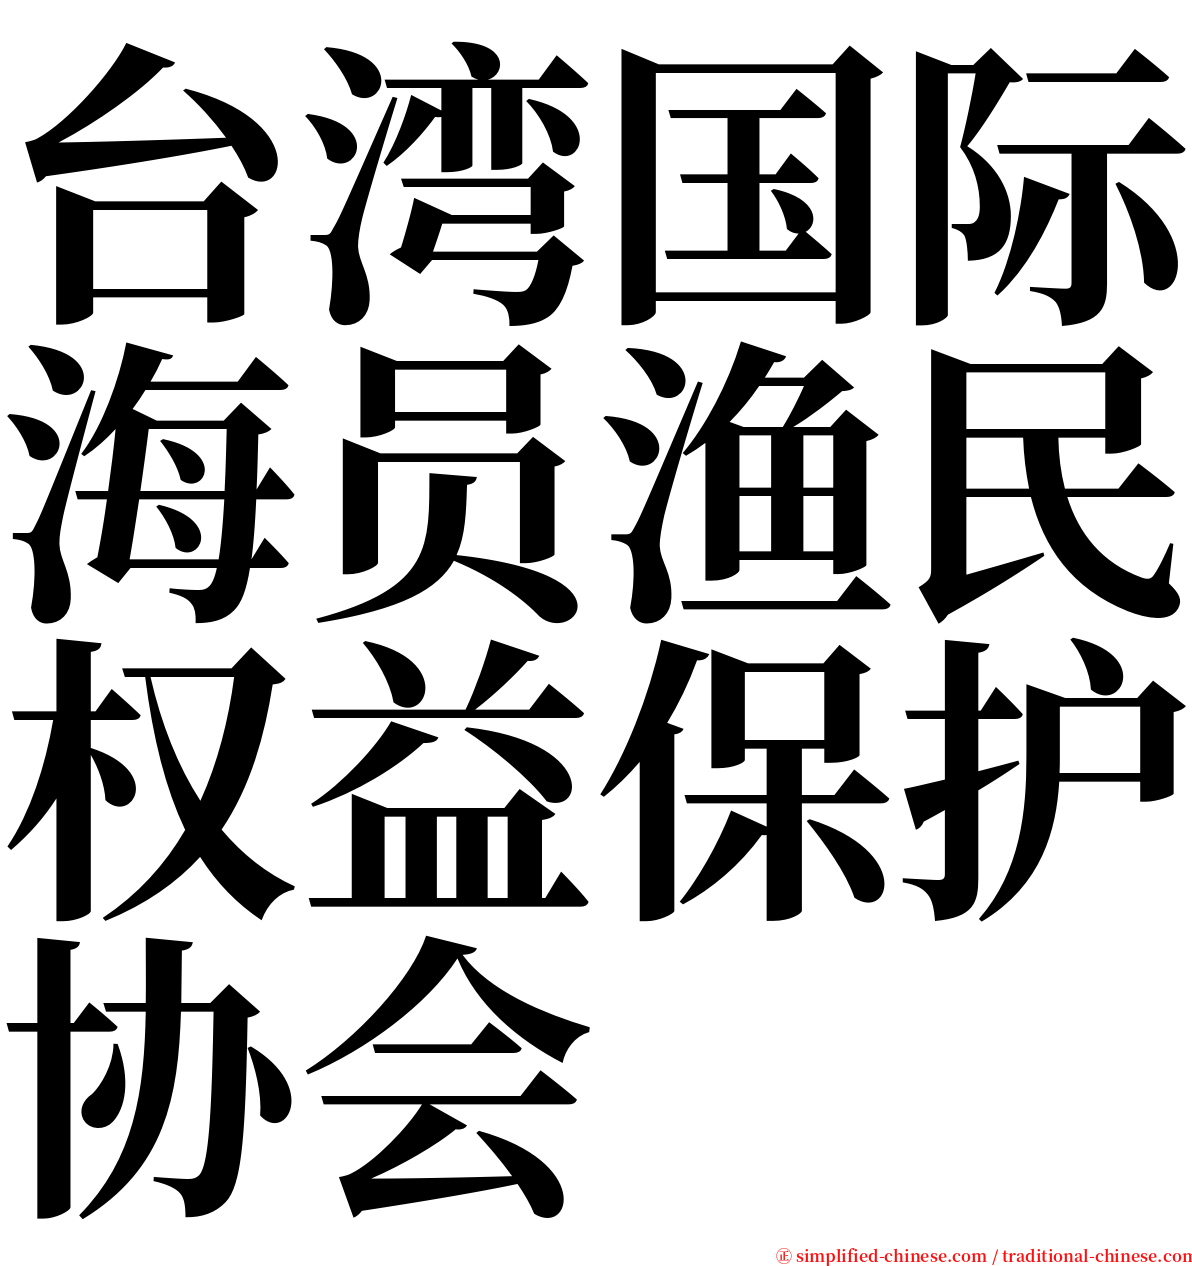 台湾国际海员渔民权益保护协会 serif font